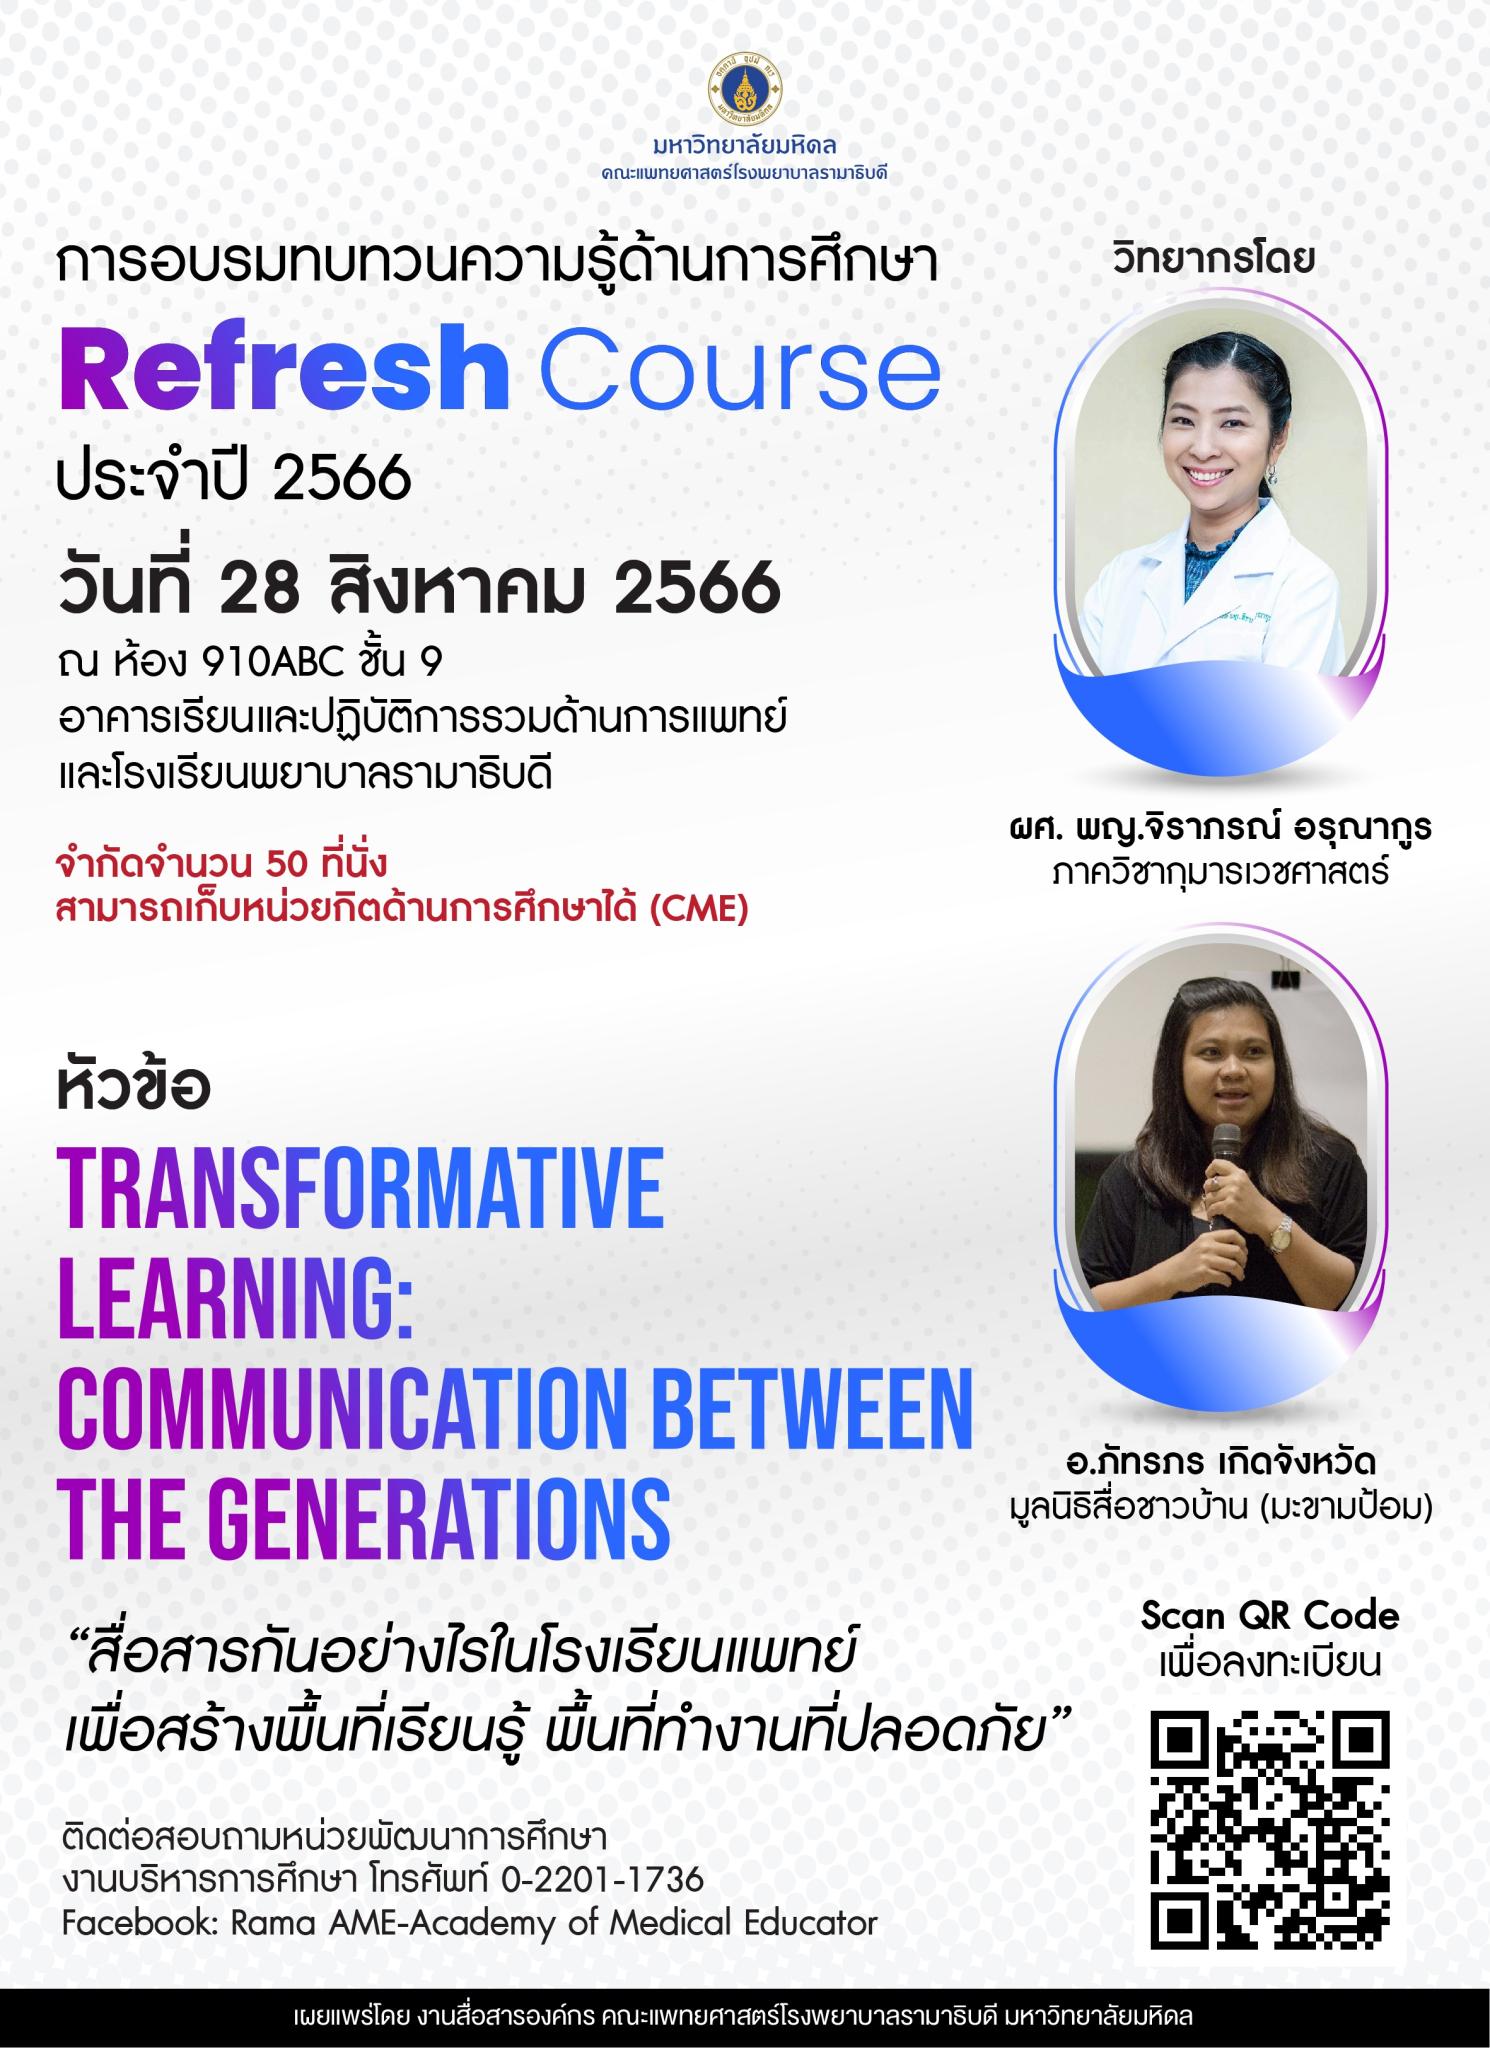 การอบรมทบทวนความรู้ด้านการศึกษา Refresh Course ประจำปี 2566 หัวข้อ TRANSFORMATIVE LEARNING: COMMUNICATION BETWEEN THE GENERATIONS